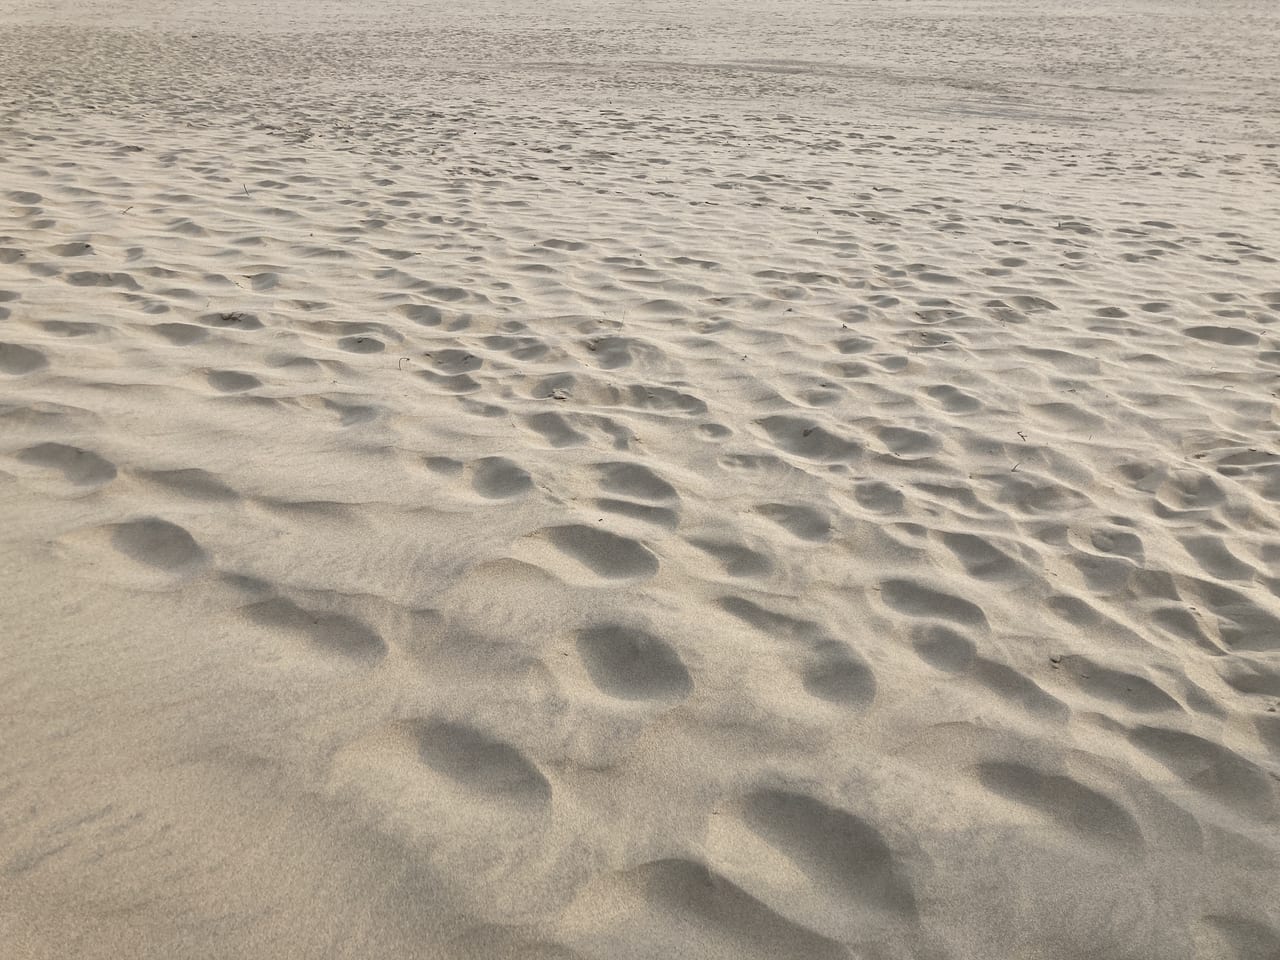 鳥取砂丘の砂